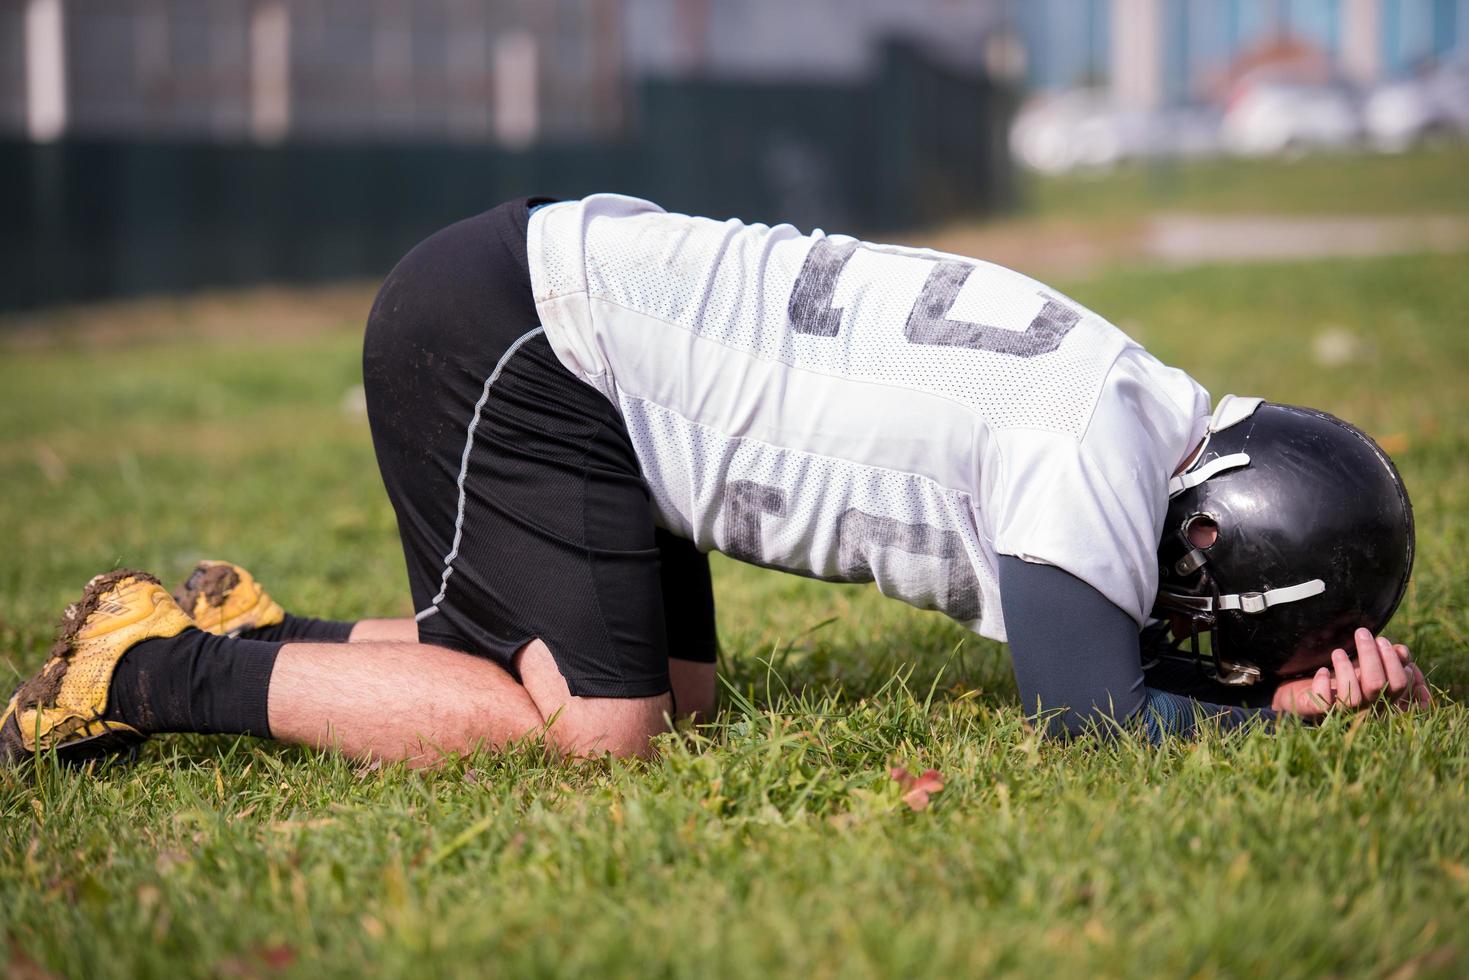 joueur de football américain se reposant après un entraînement intensif photo